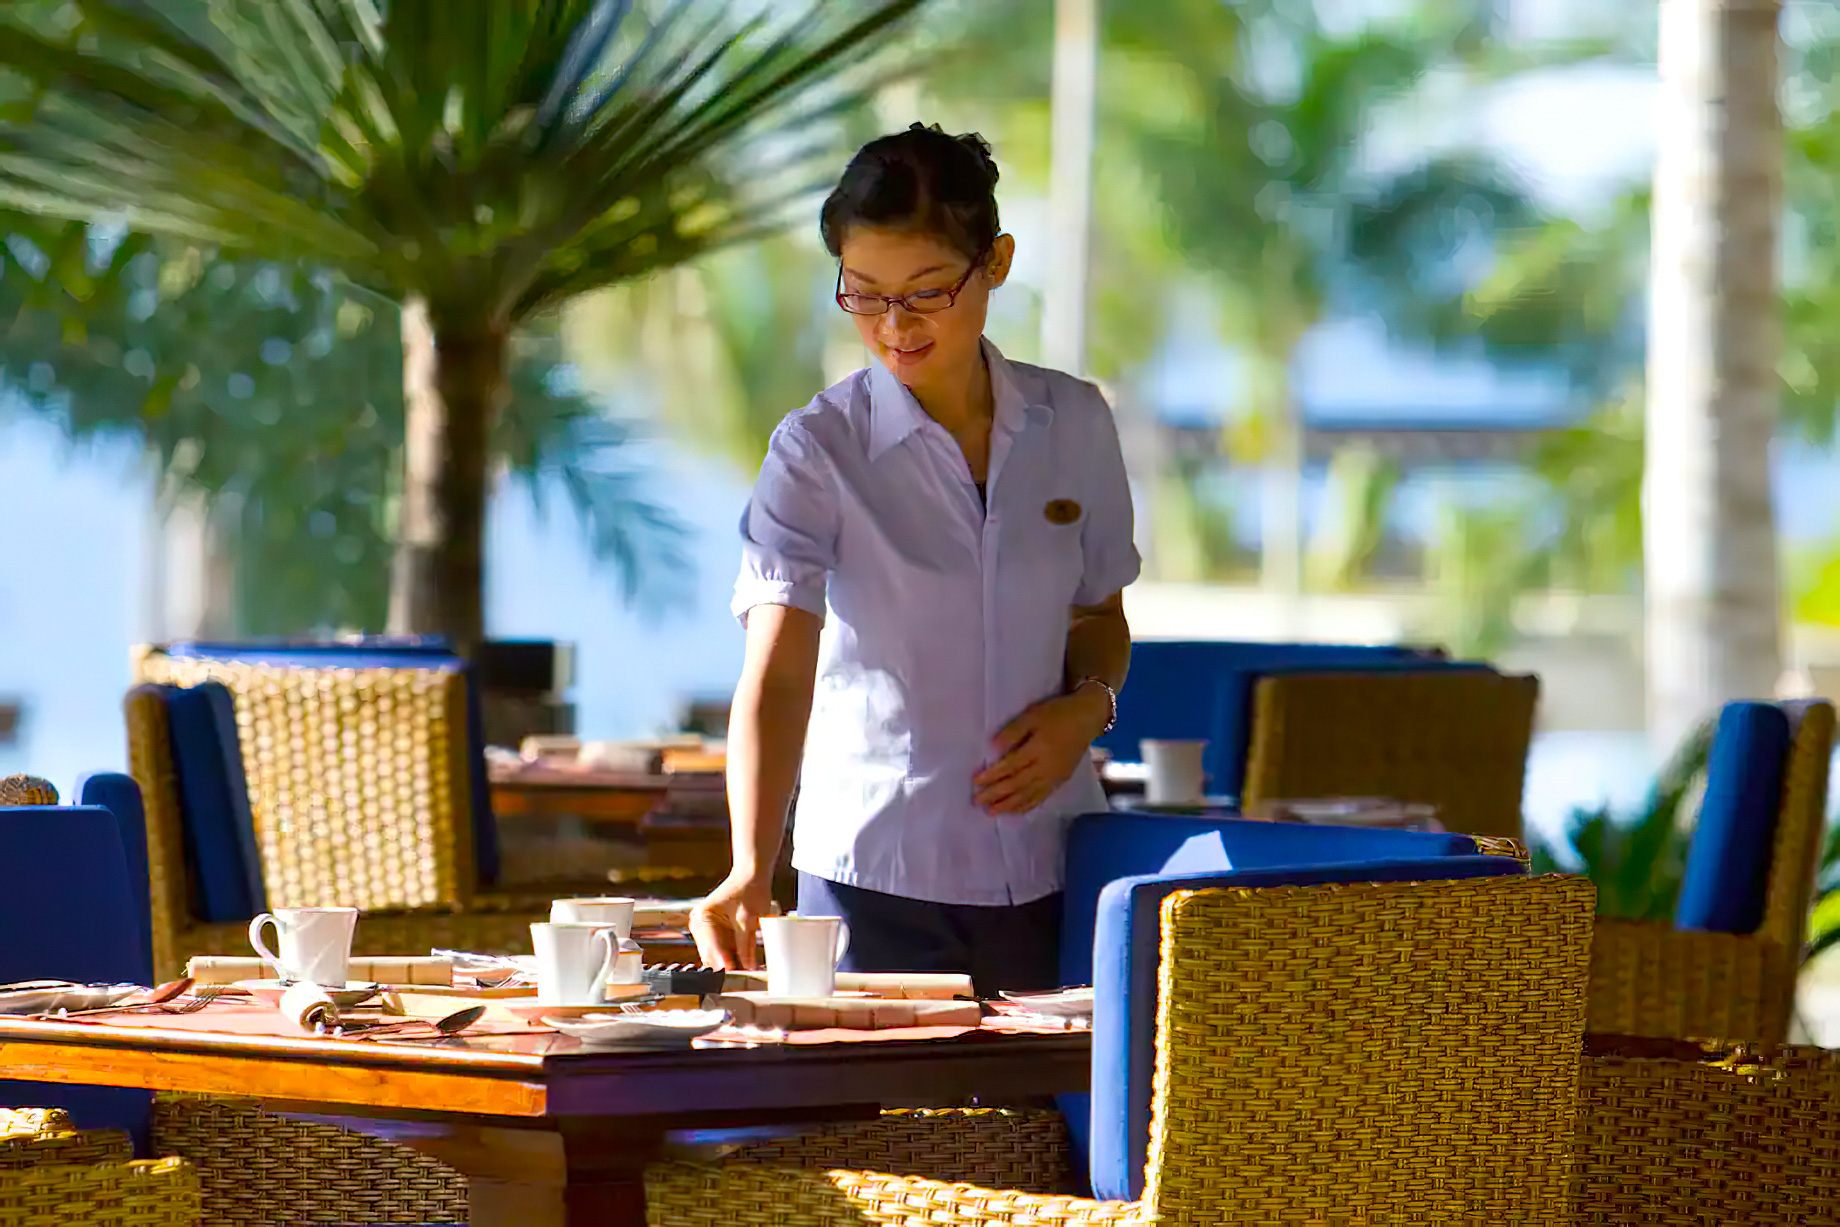 Mandarin Oriental, Sanya Hotel – Hainan, China – Pavilion Restaurant Service